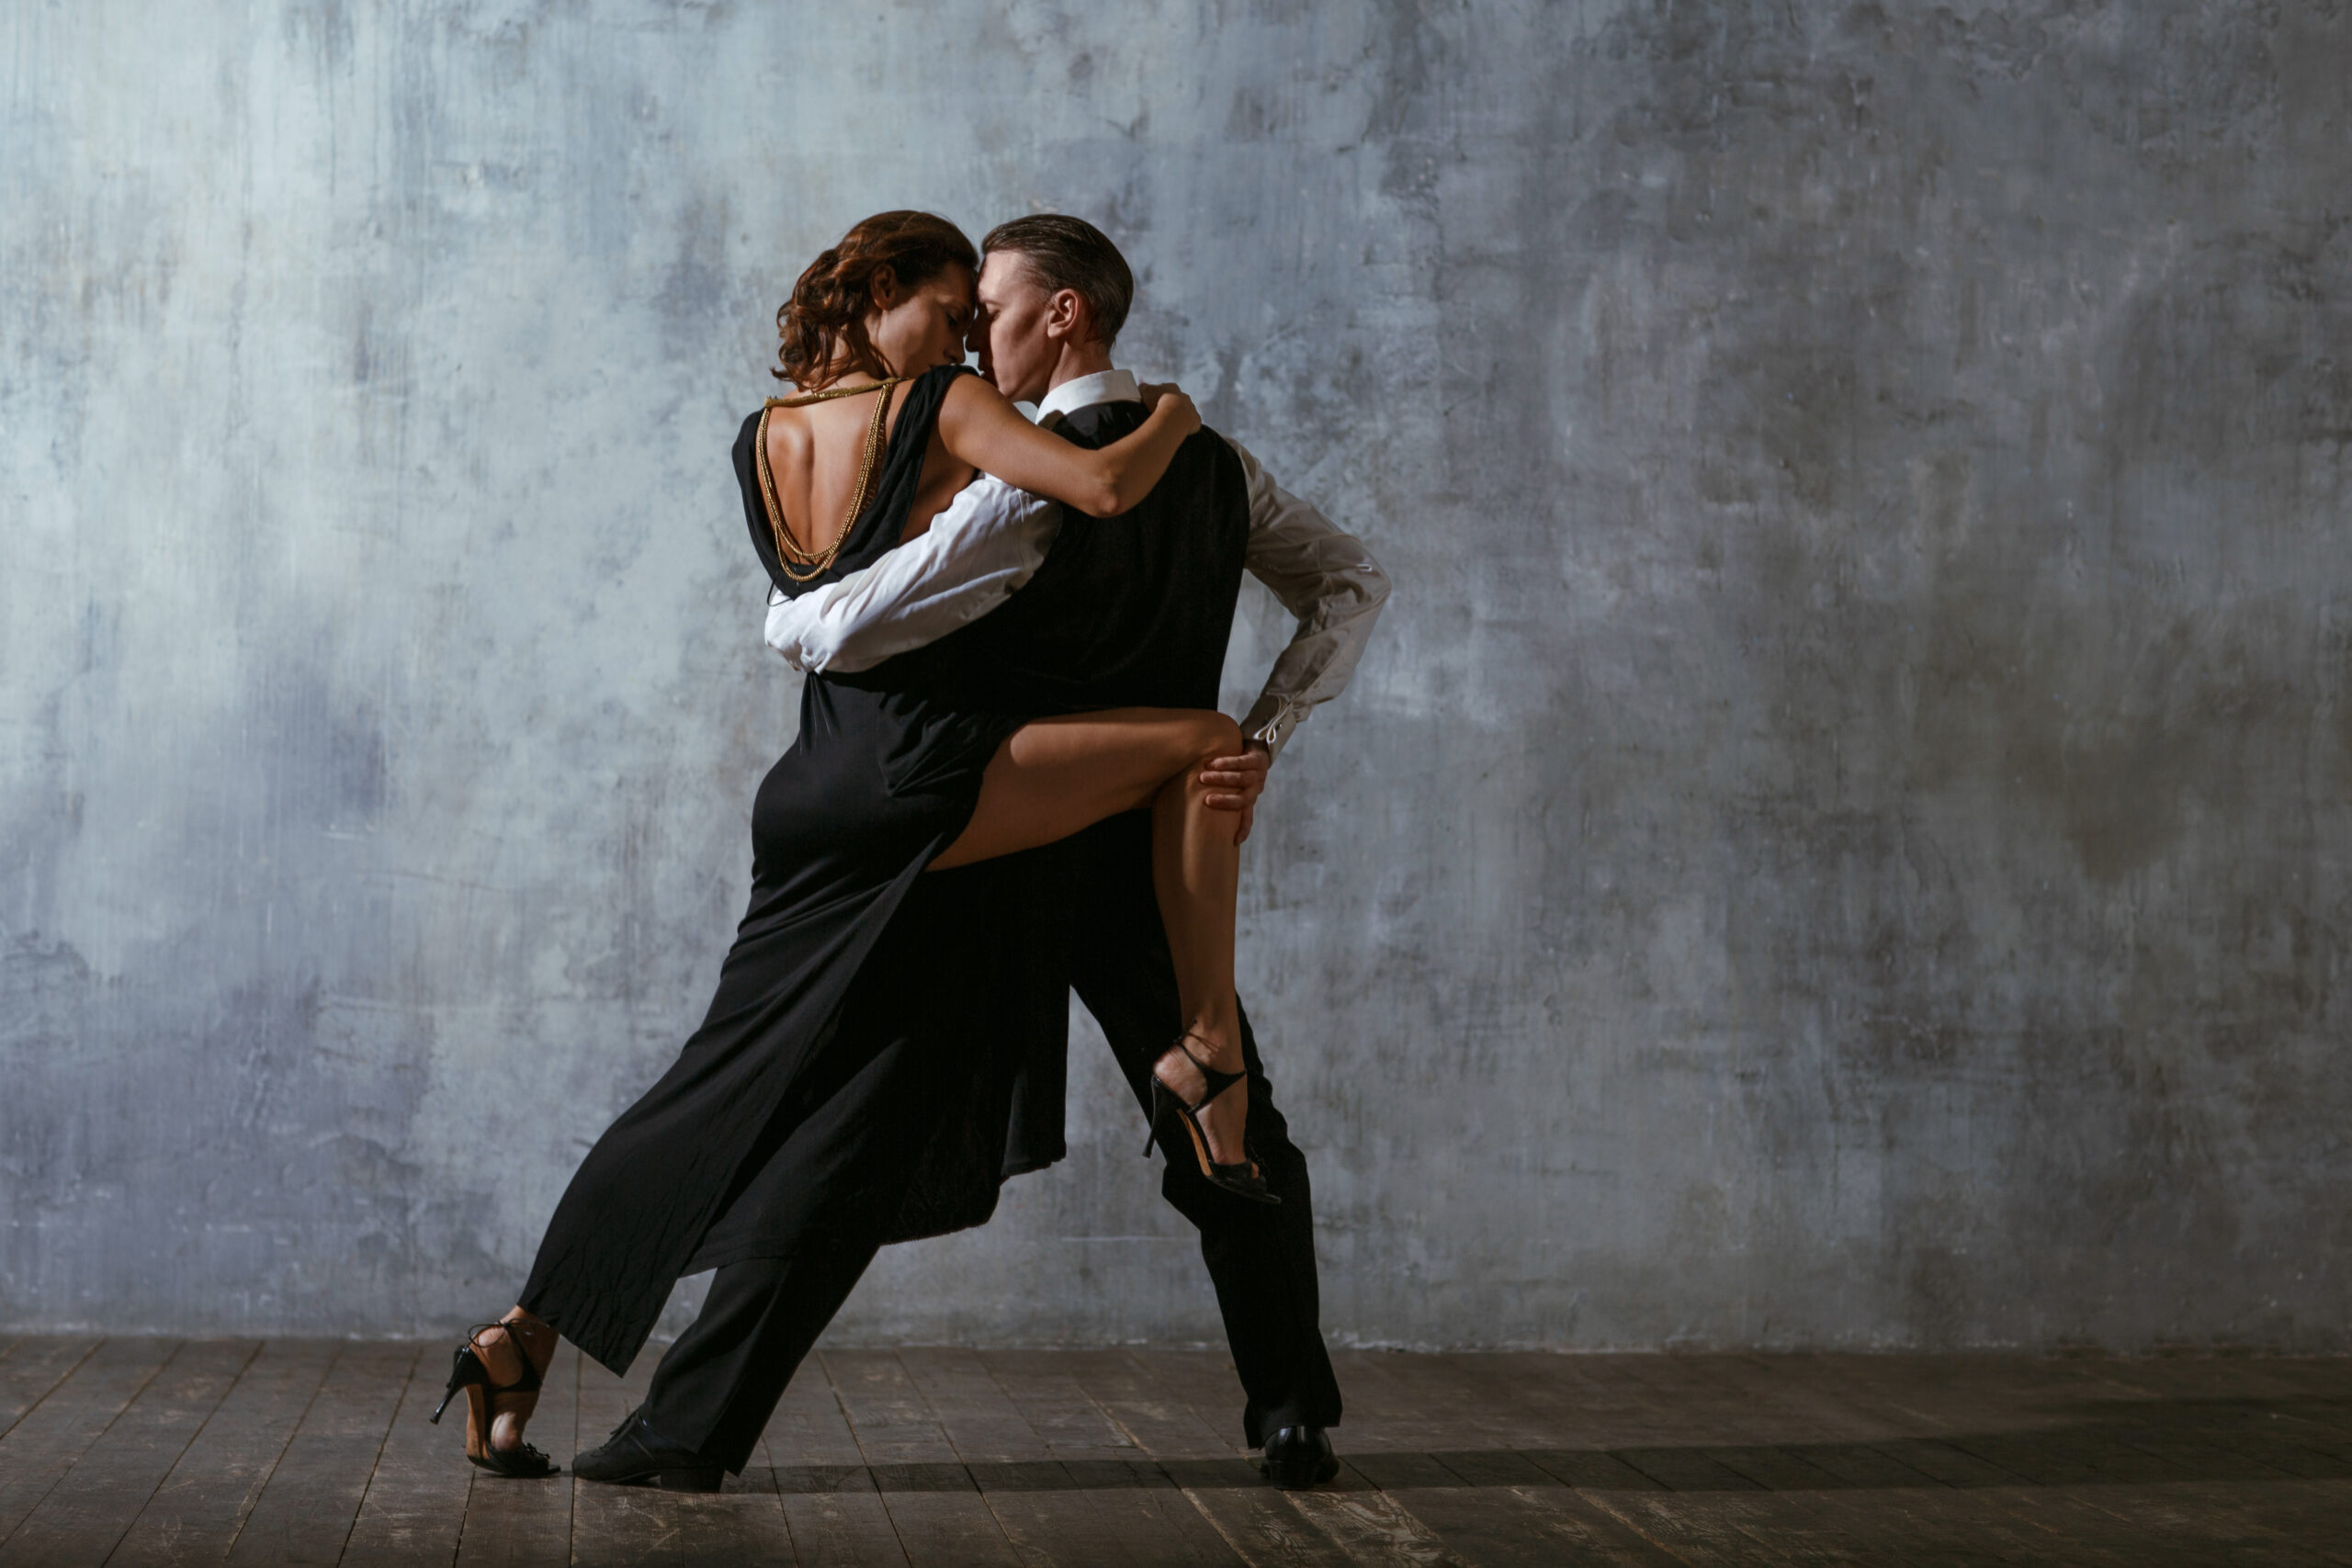 Dancing Tango